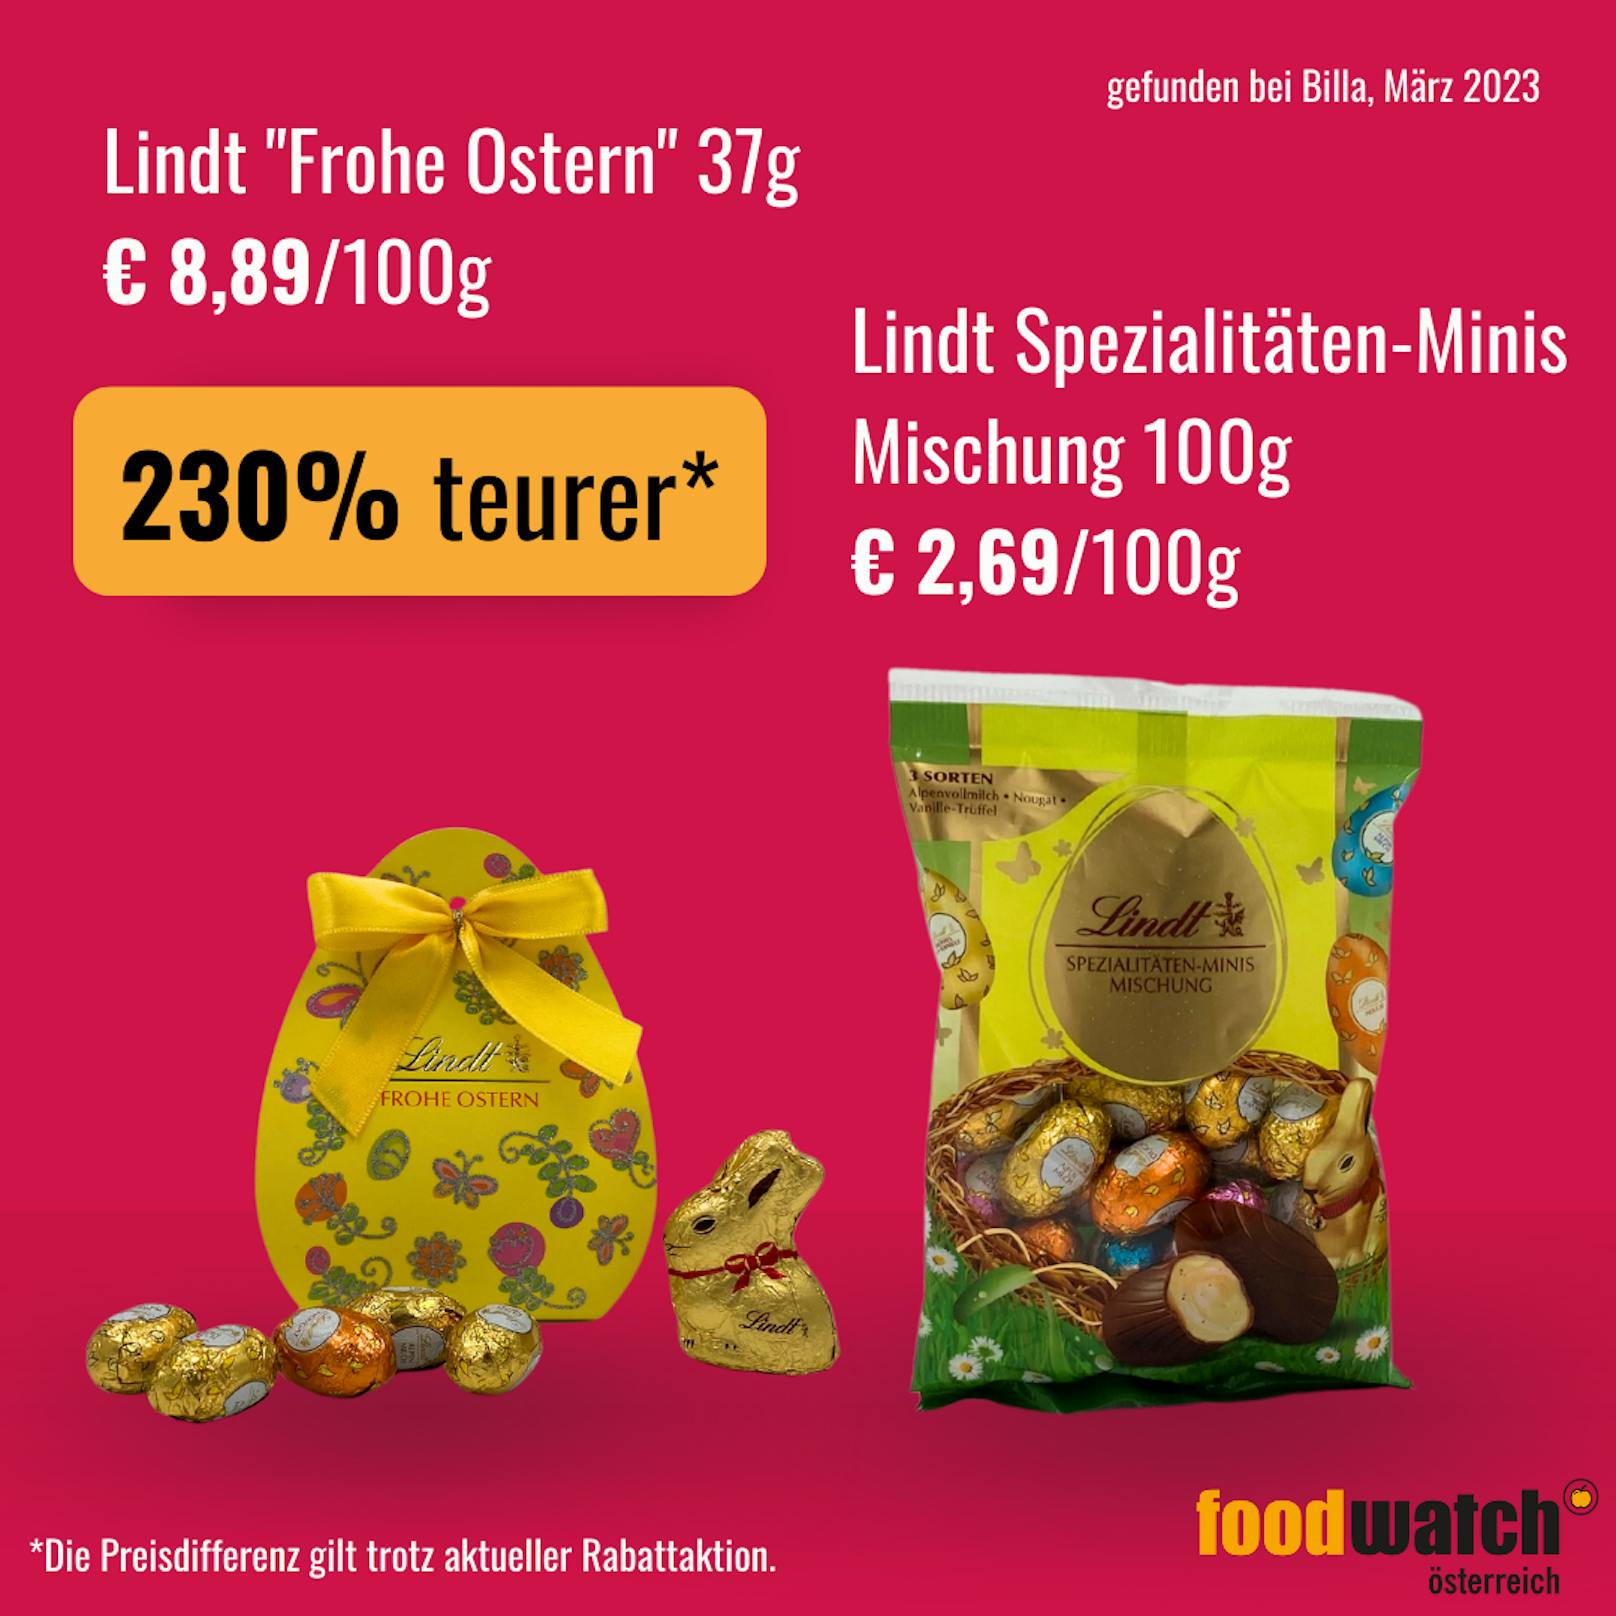 Die gleiche Lindt-Mischung kostet im Ostergewandt gleich über 6 Euro mehr.